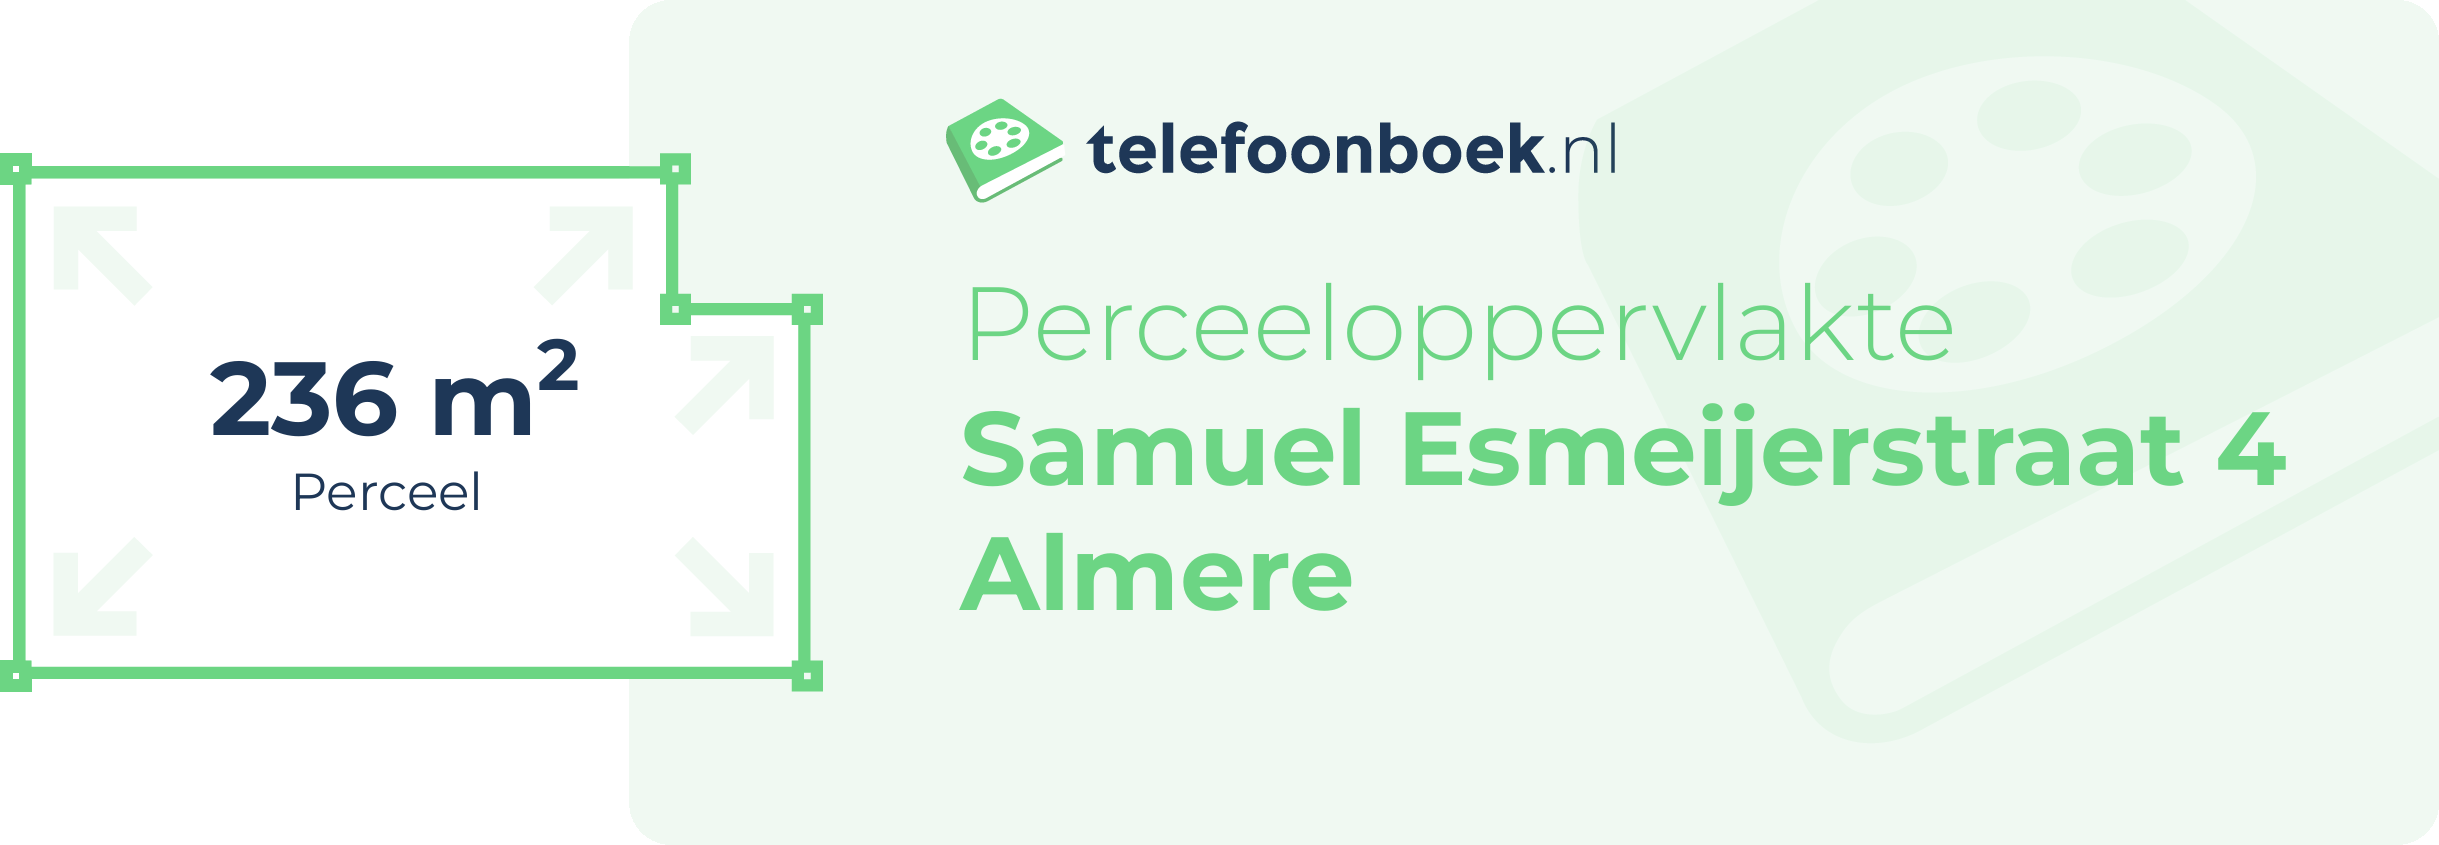 Perceeloppervlakte Samuel Esmeijerstraat 4 Almere